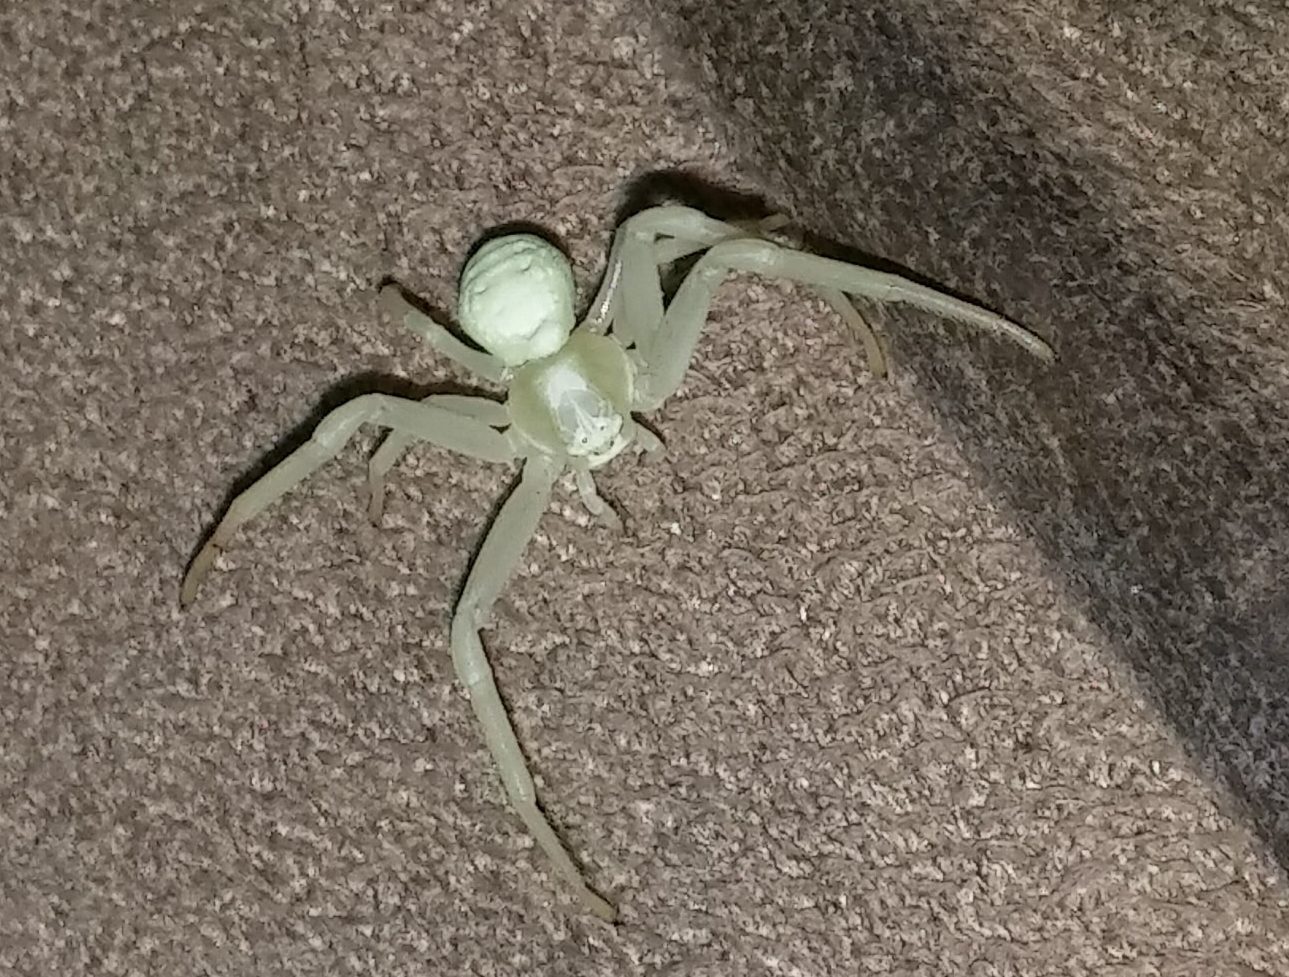 Picture of Misumena vatia (Golden-rod Crab Spider) - Dorsal